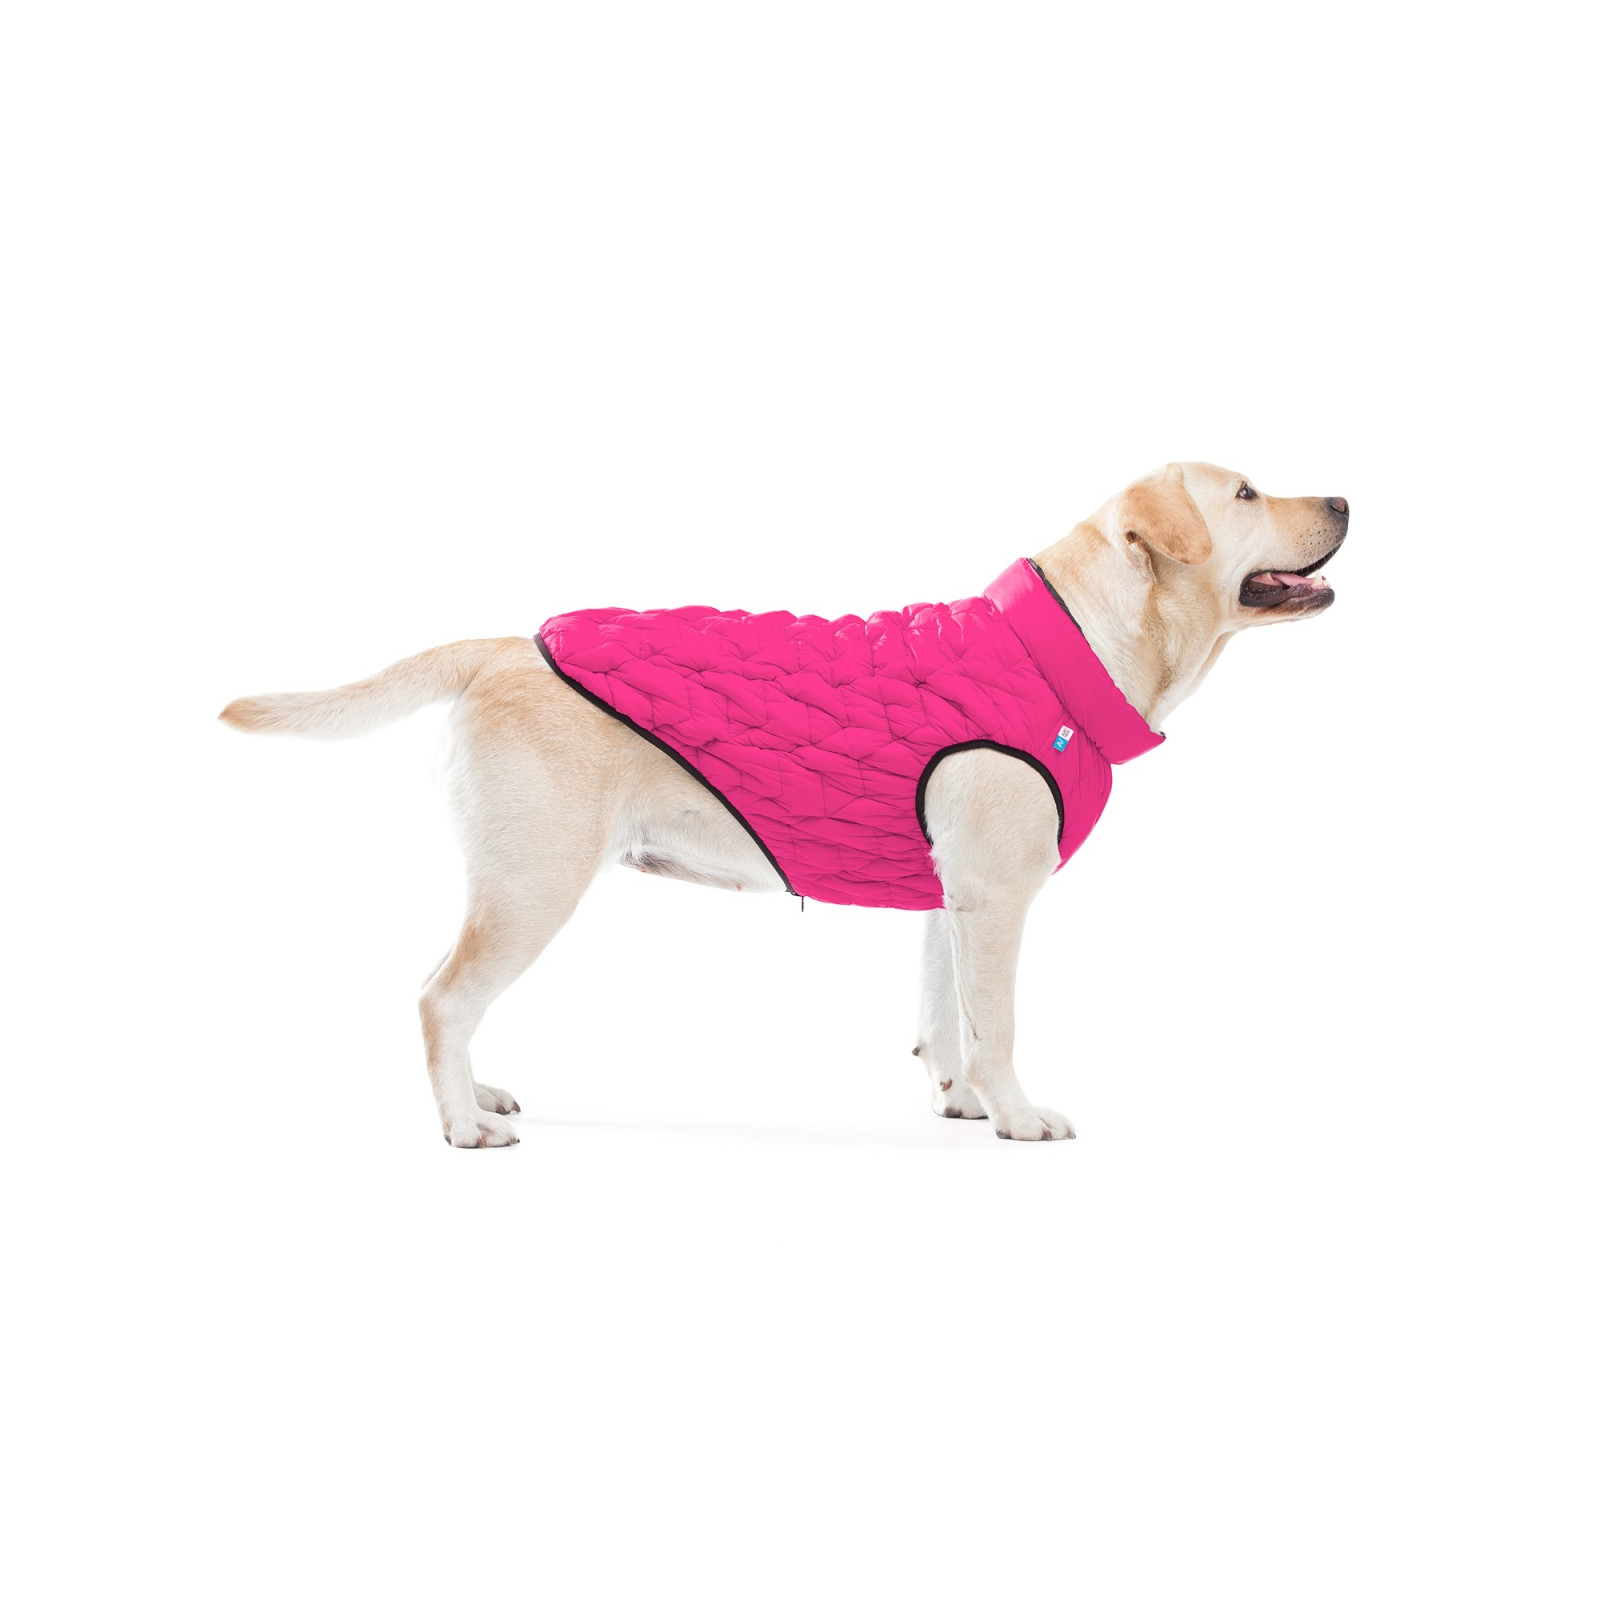 Курточка для животных Collar AiryVest UNI двусторонняя S 38 розовато-черная (2534) изображение 4